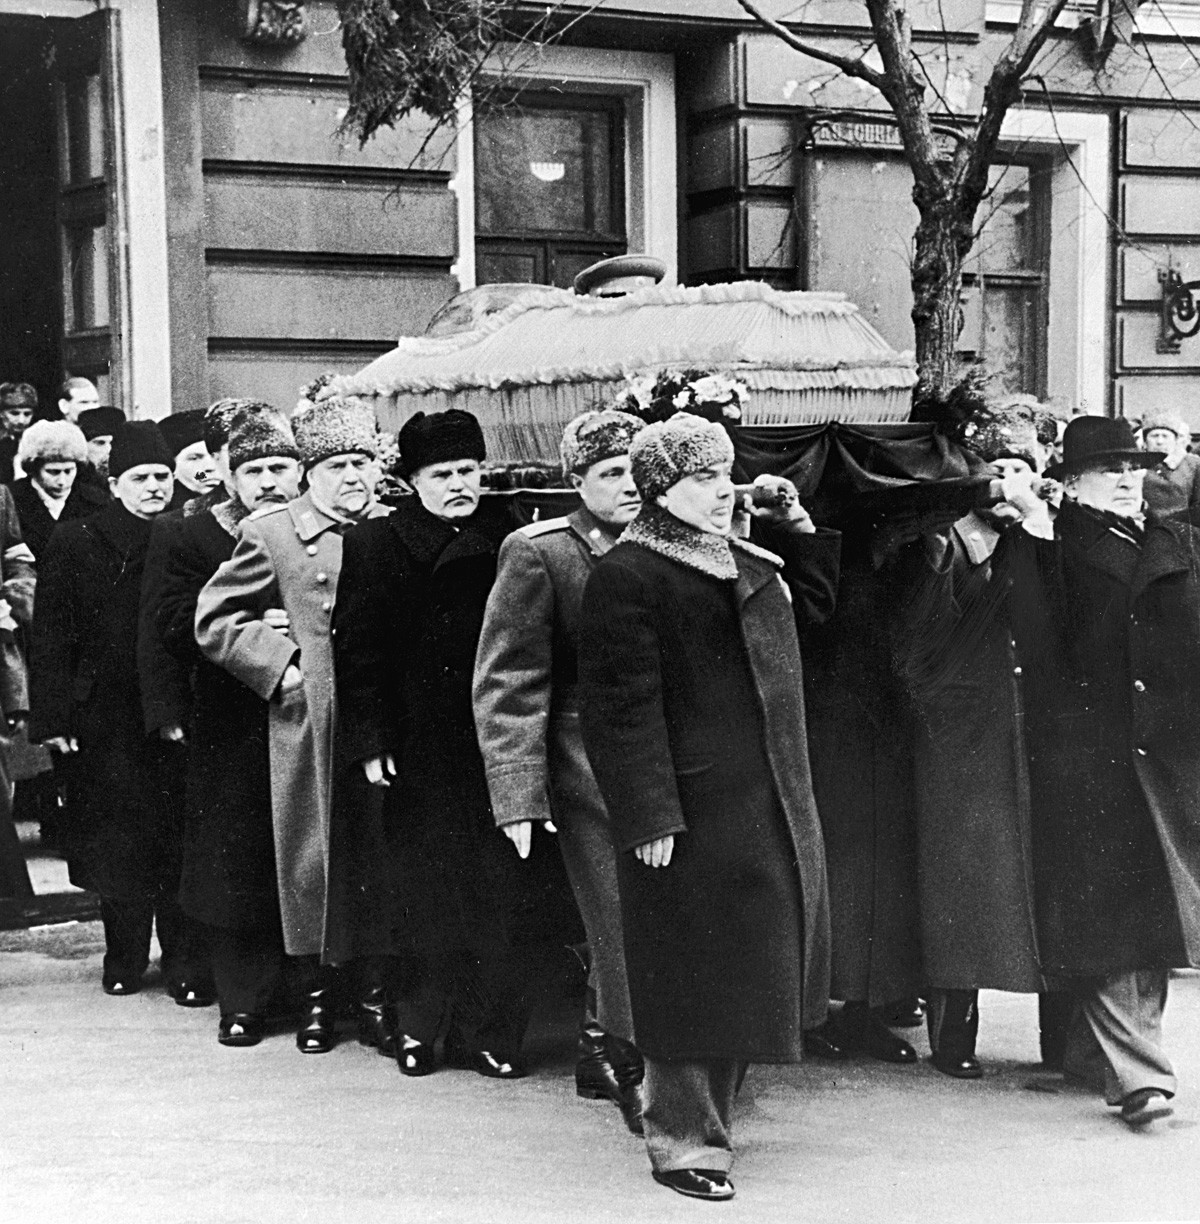 1953年3月。ヨシフ・スターリン (1879 - 1953)の棺を運んでいるラヴレンチー・ベリヤ(1938 - 1953)、ゲオルギー・マレンコフ第2代閣僚会議議長(1902 - 1988)、ワシーリー・スターリン中将、ヴャチェスラフ・モロトフ (1890 - 1986)、ニコライ・ブルガーニン元帥(1995 - 1975)、ラーザリ・カガノーヴィチ(1893 - 1991) 、ニコライ・シュヴェルニク。